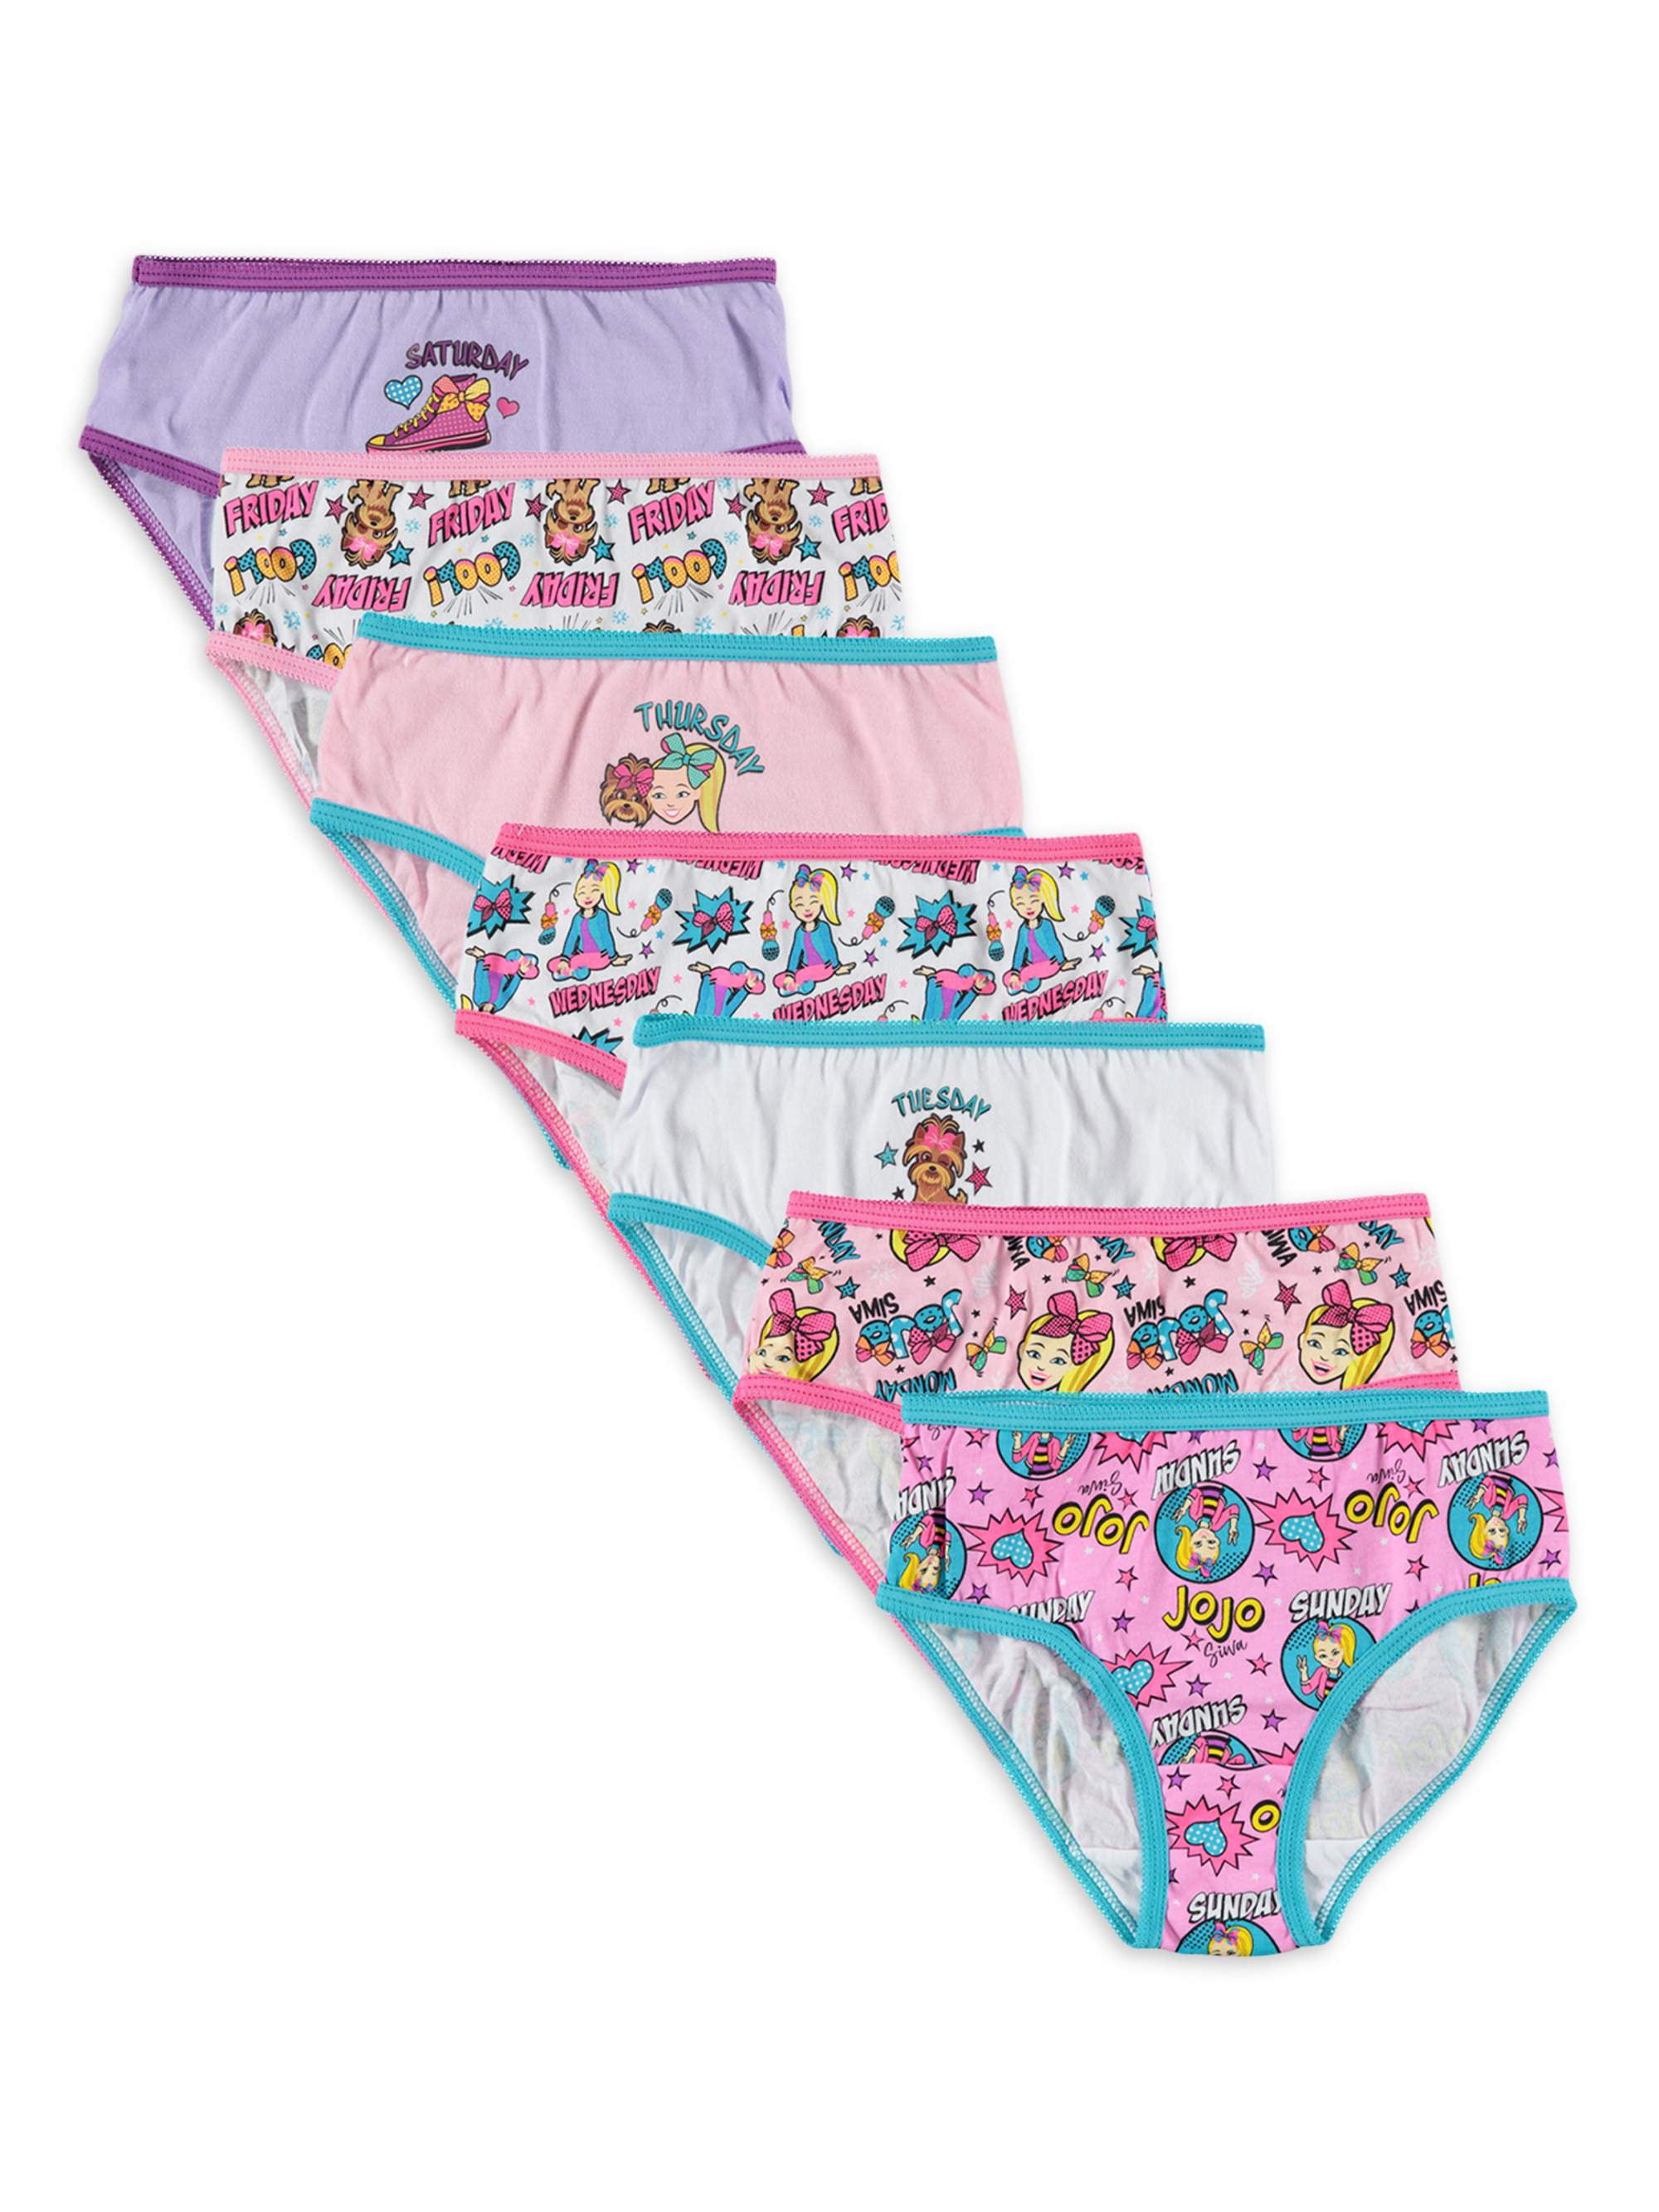 Toddler Girls 7 Pack Tie Dye Days Of The Week Panties